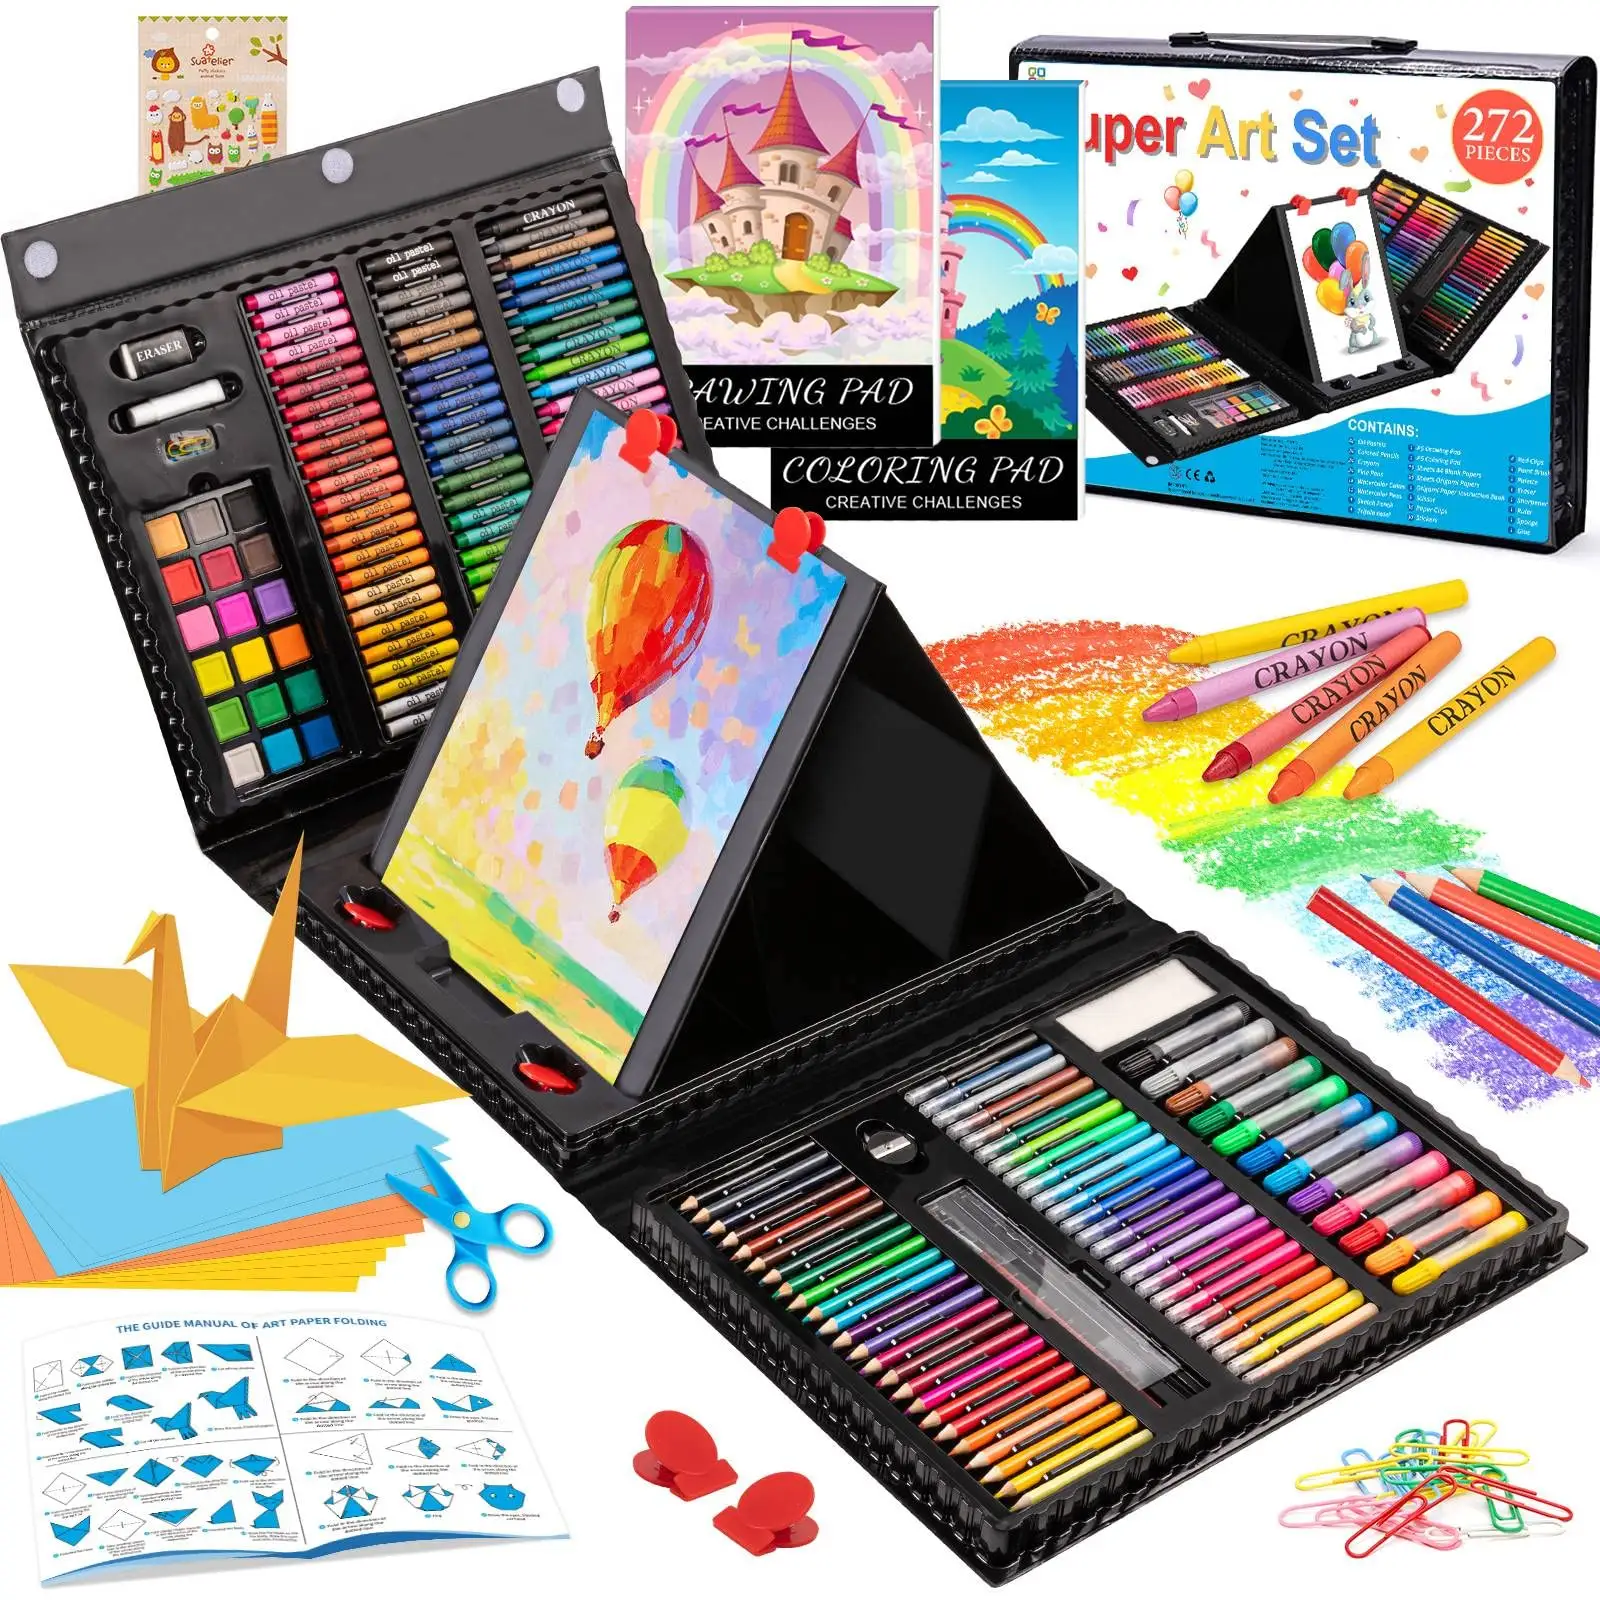 Großhandel Kunst liefert Kunststoff Box Art Sets Zeichnung sset für Kinder mit dreifach gefalteten Staffelei Zeichenblock Pastelle Buntstift Bleistift Aquarell